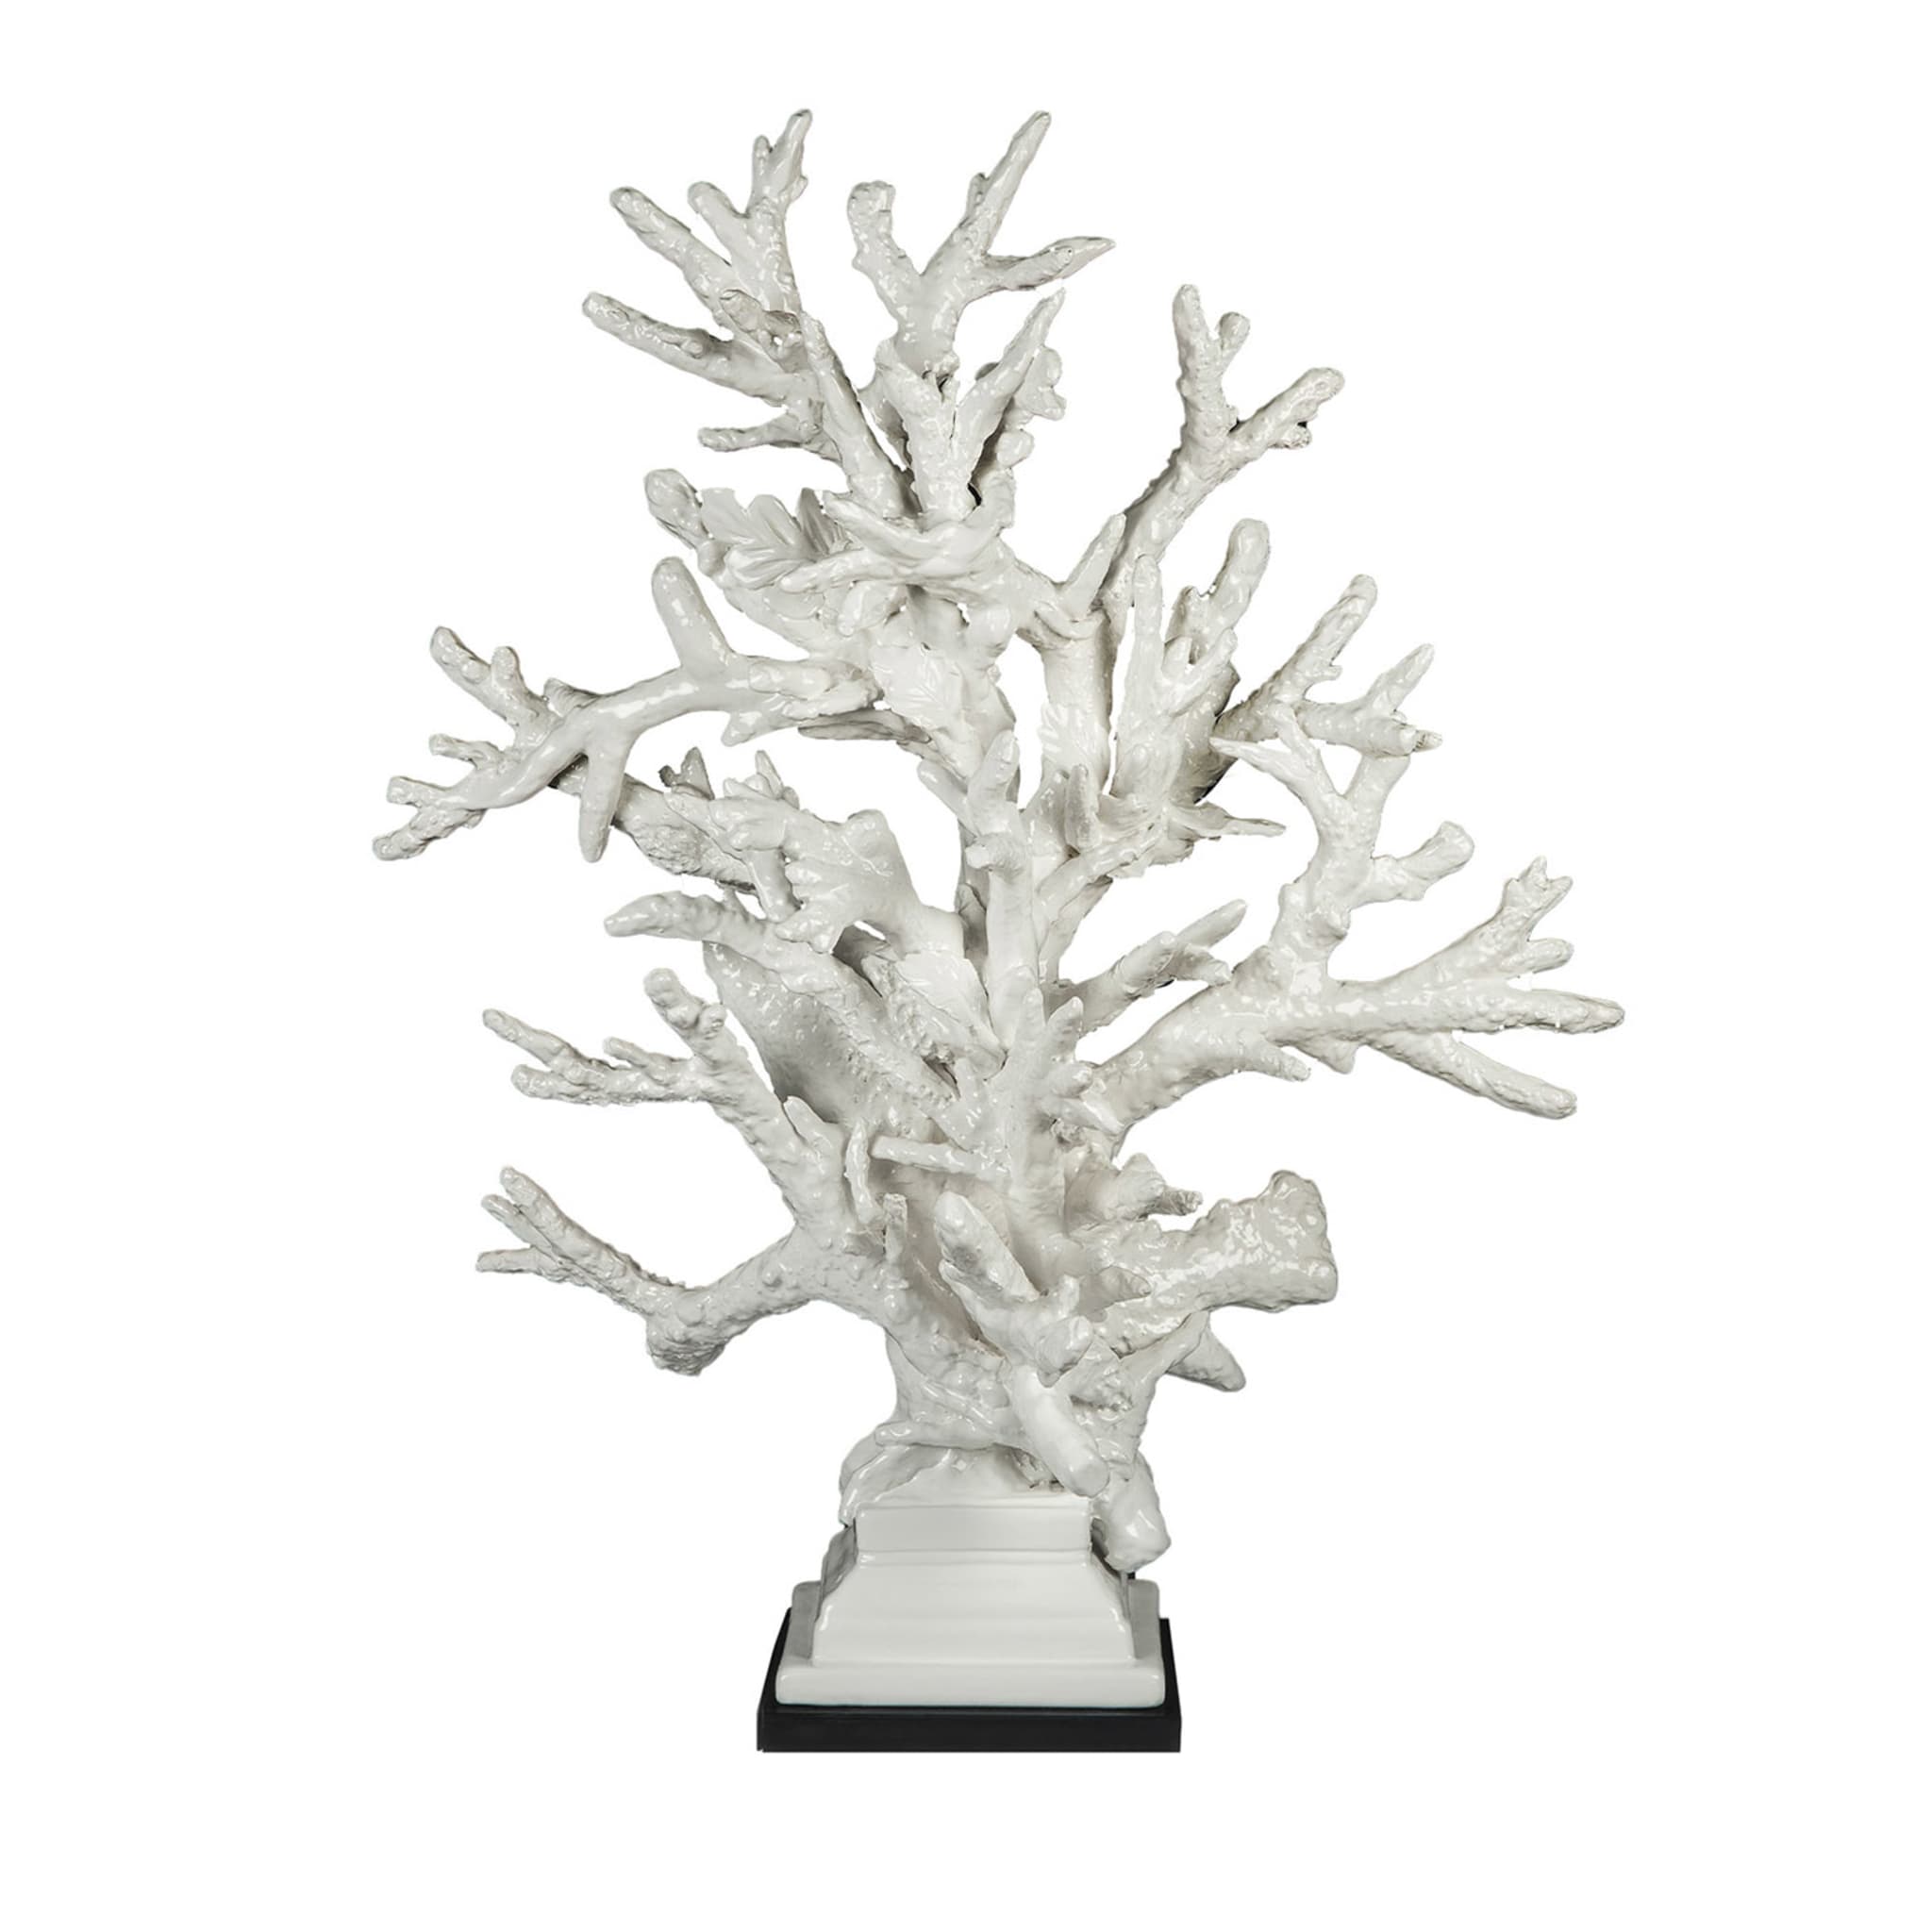 Coralli White Sculpture by Antonio Fullin - Main view